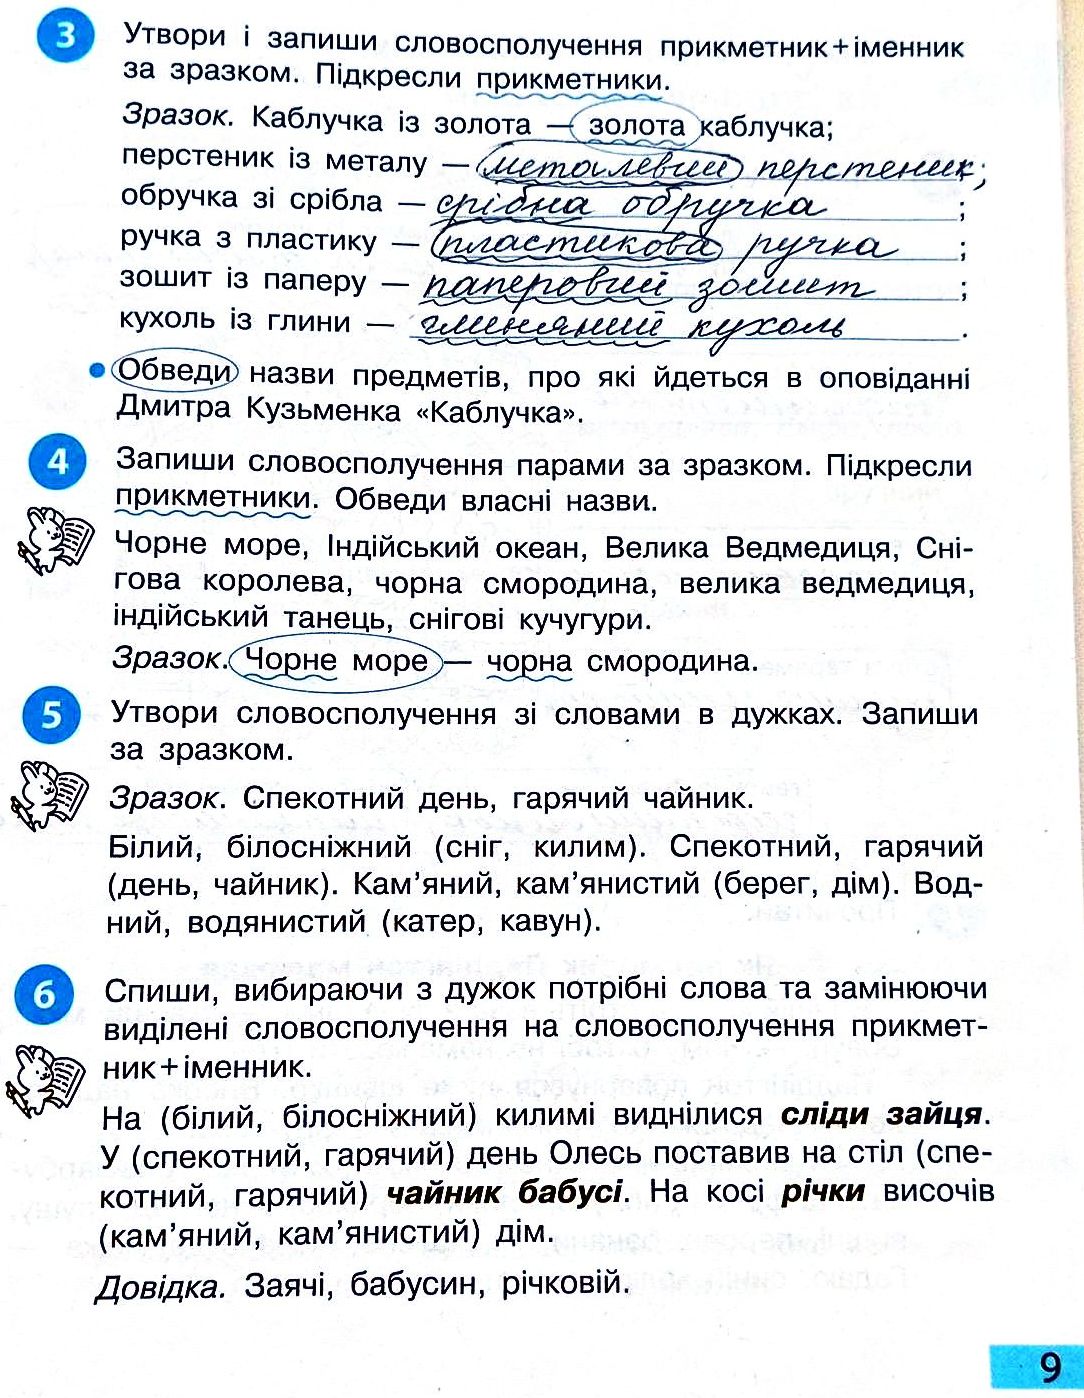 Сторінка 9 частина 2 гдз 3 клас робочий зошит українська мова Большакова